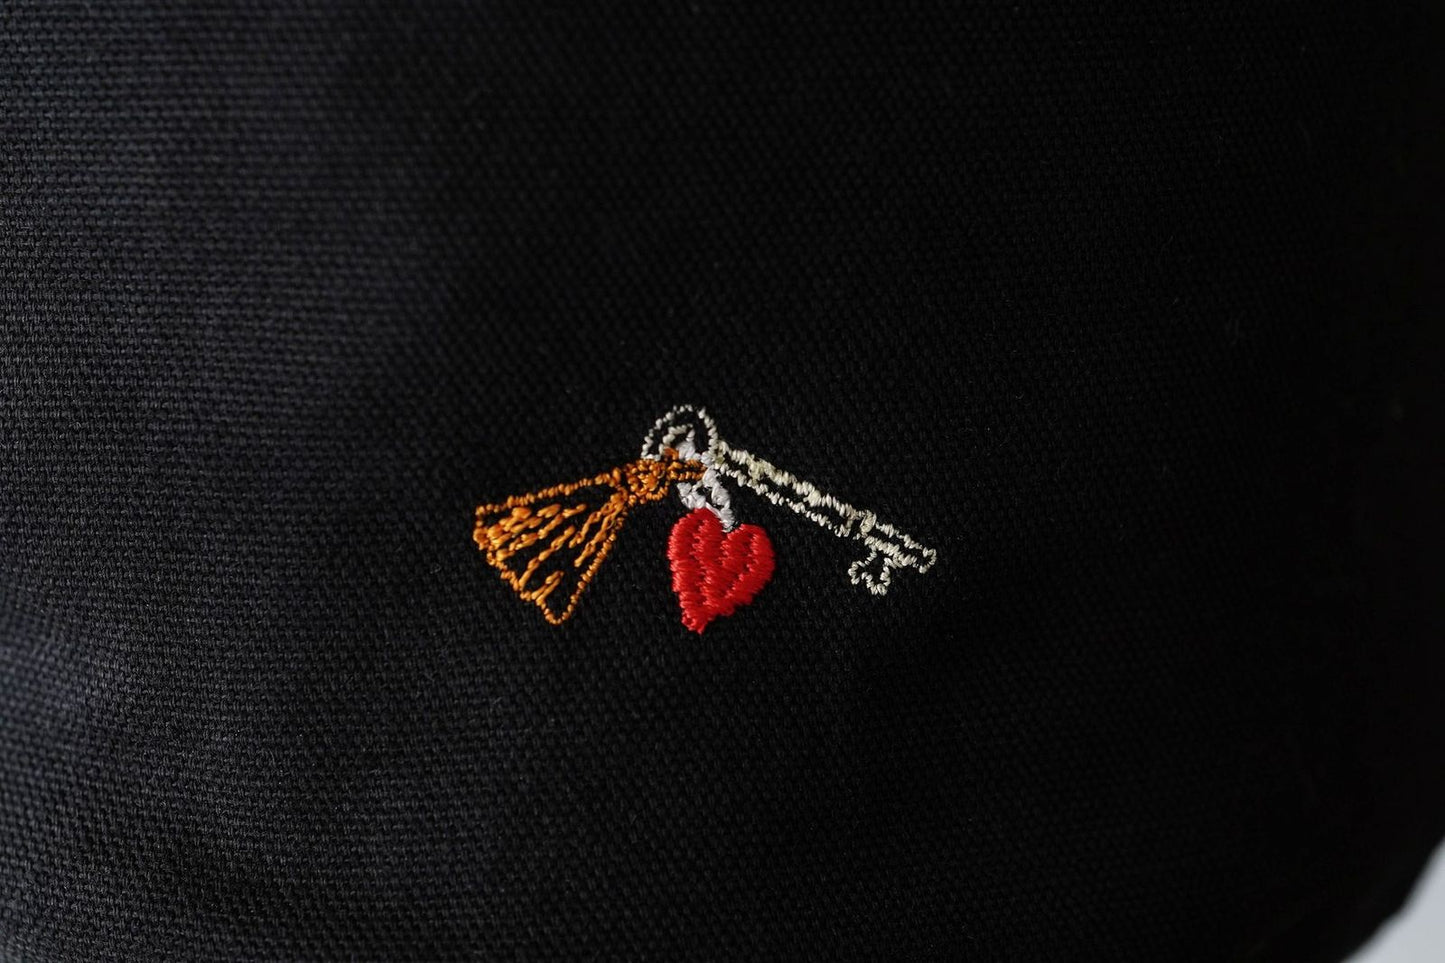 【10月末再販予定】ミニバッグ / Embroidered Bag